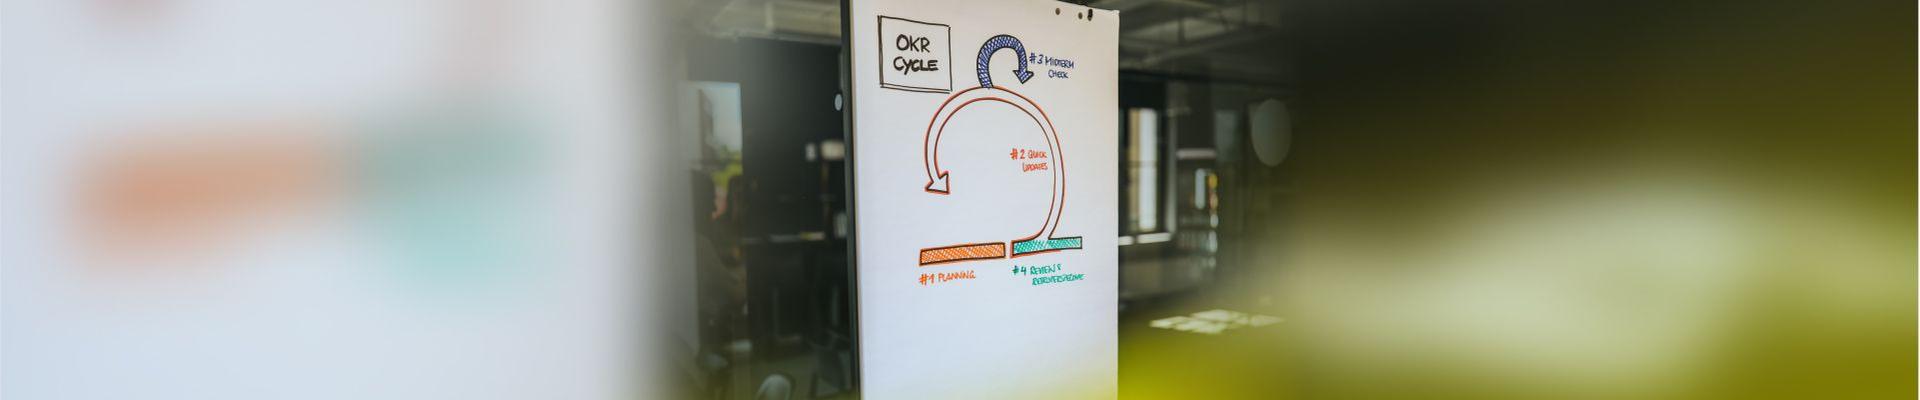 OKR cycle workshop